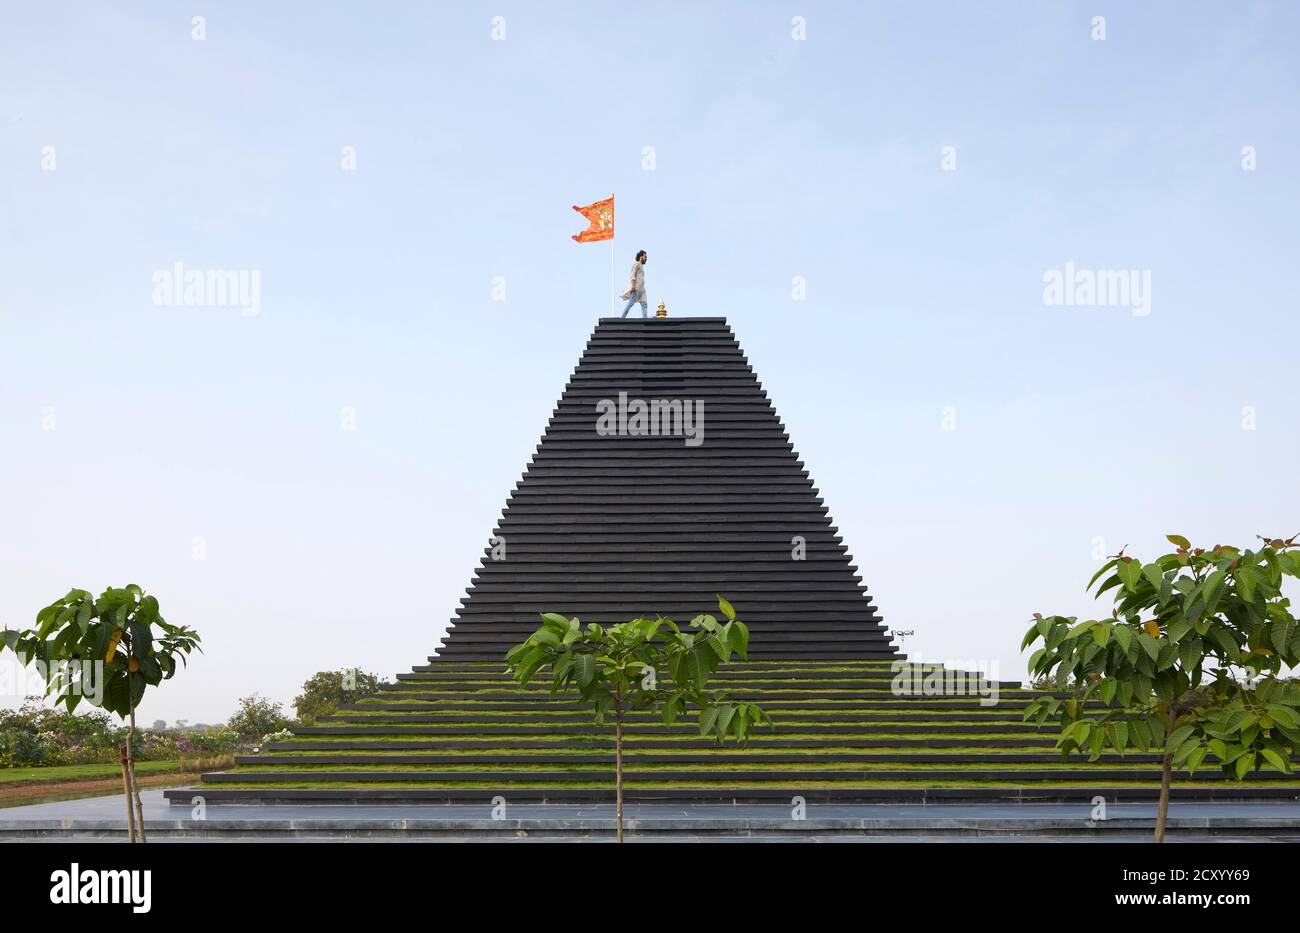 Seitenansicht des Tempels mit Figur auf dem Dach. Balaji-Tempel, Andhra Pradesh, Indien. Architekt: Sameep Padora und Mitarbeiter , 2020. Stockfoto